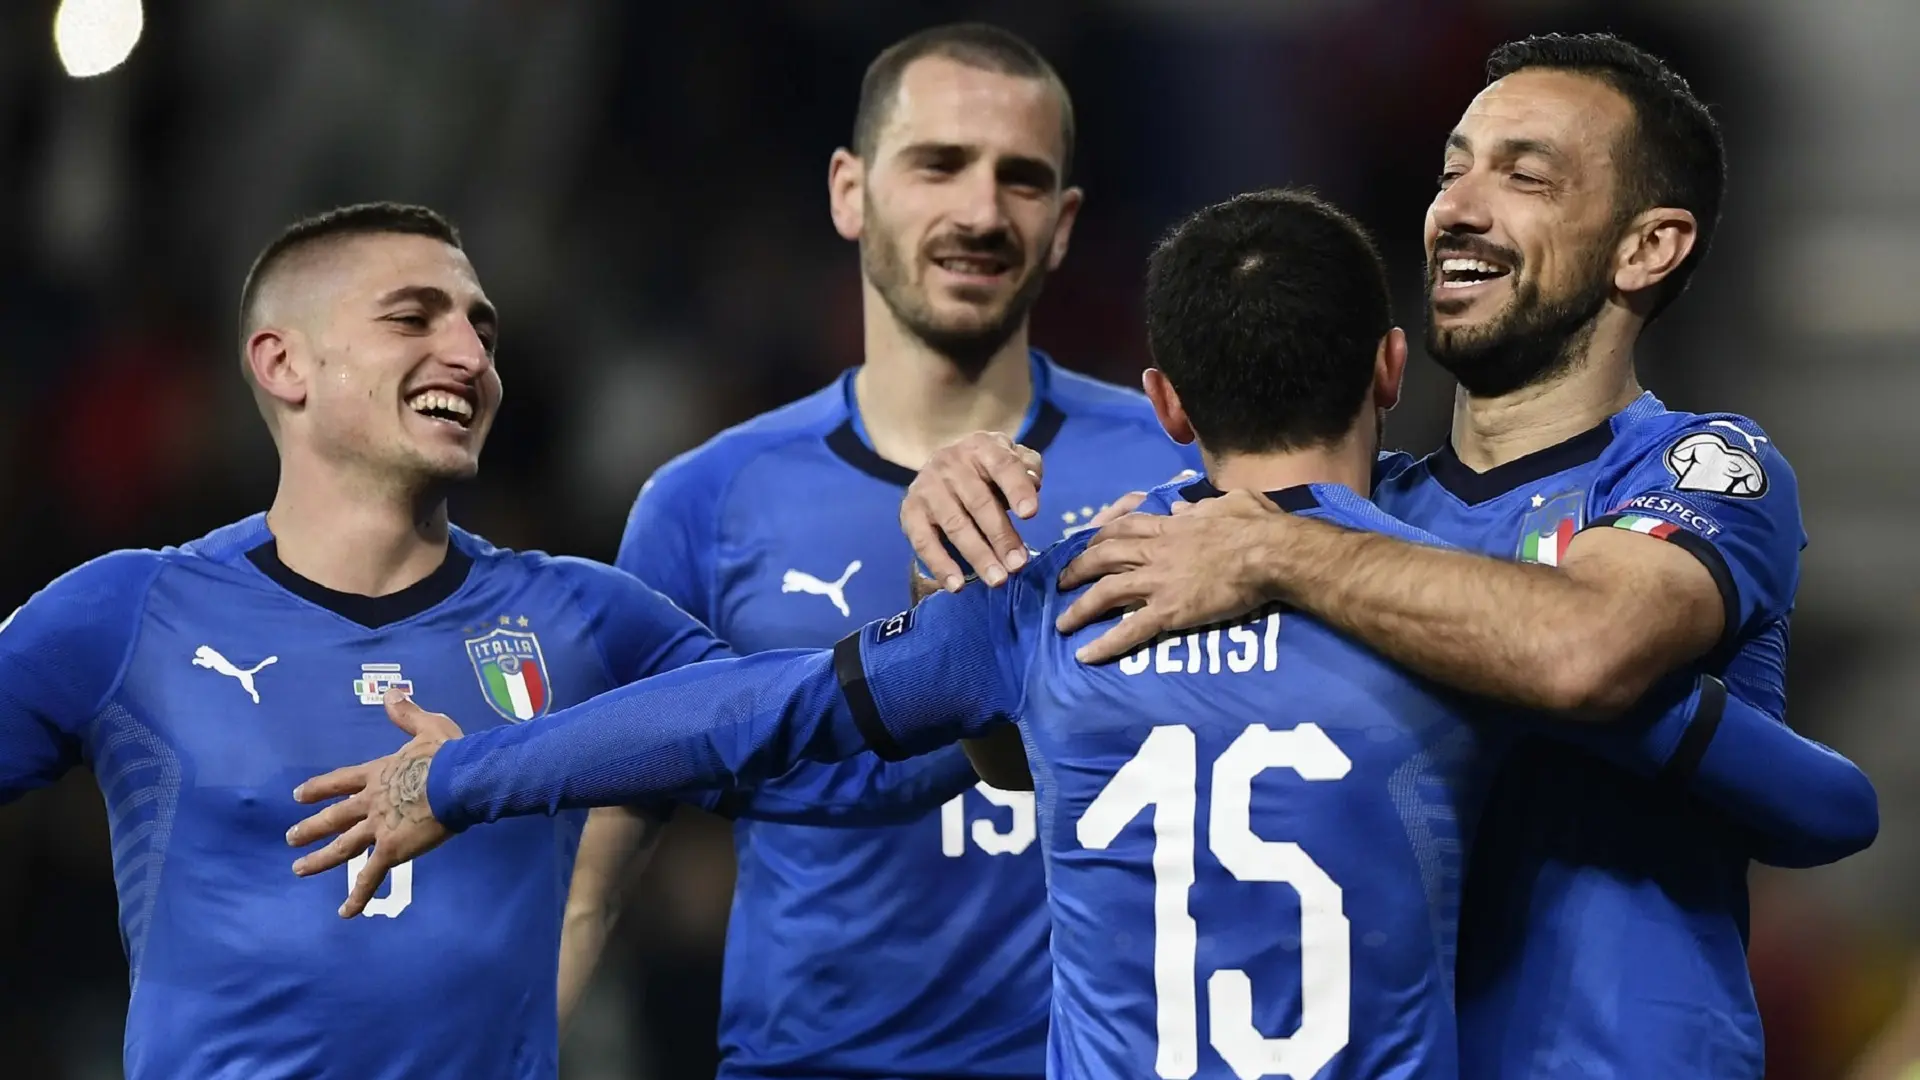 fudbalska reprezentacija italije, kvalifiakcije za euro 2020 protiv lihtenštajna - 26 mart 2019 - foto profimedia-6559f891c0d2a.webp